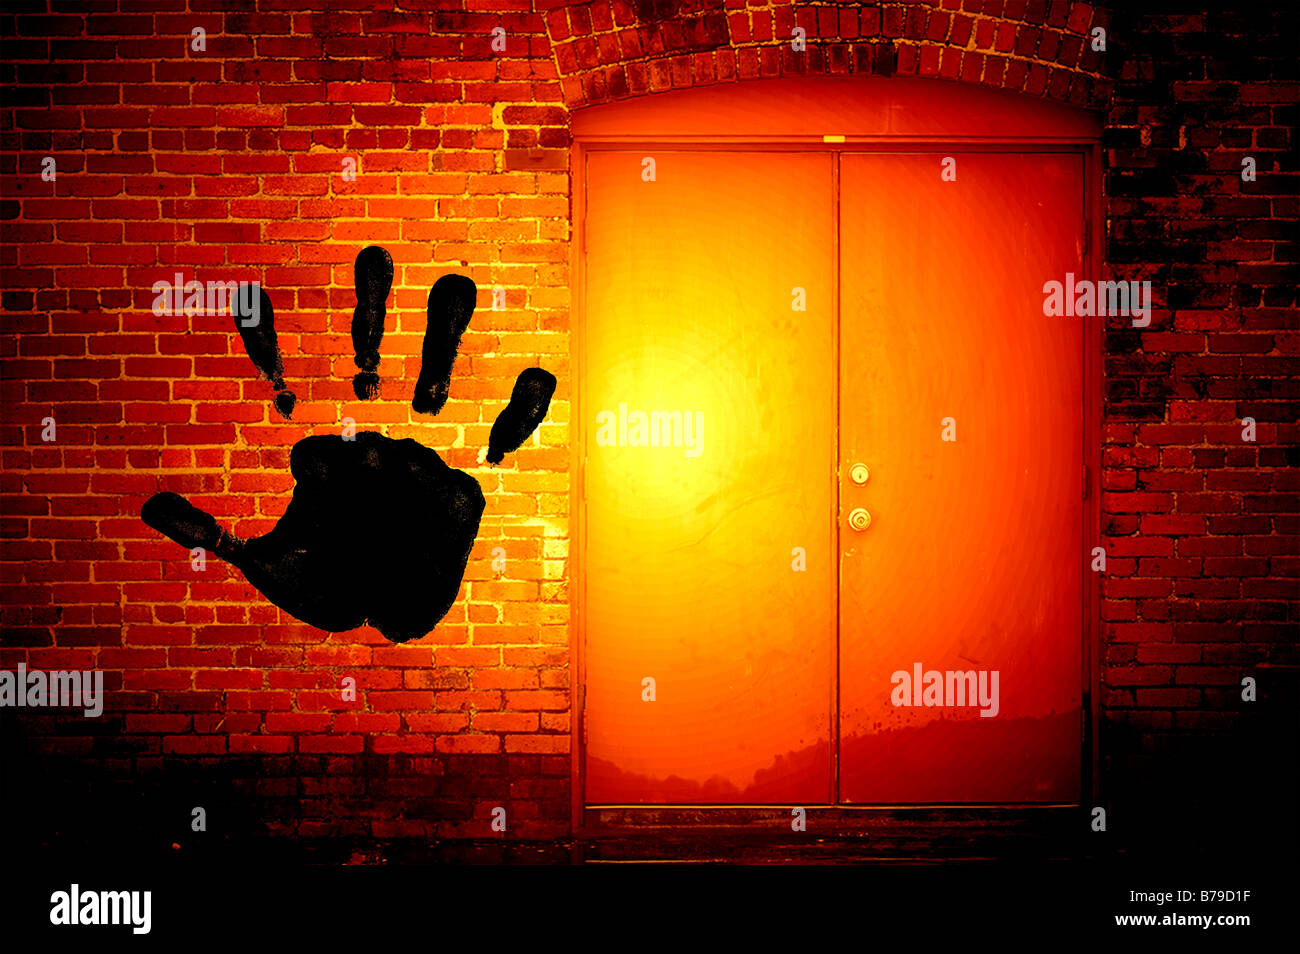 Grande main noire de l'écriture graffiti sur mur de brique en alley Banque D'Images